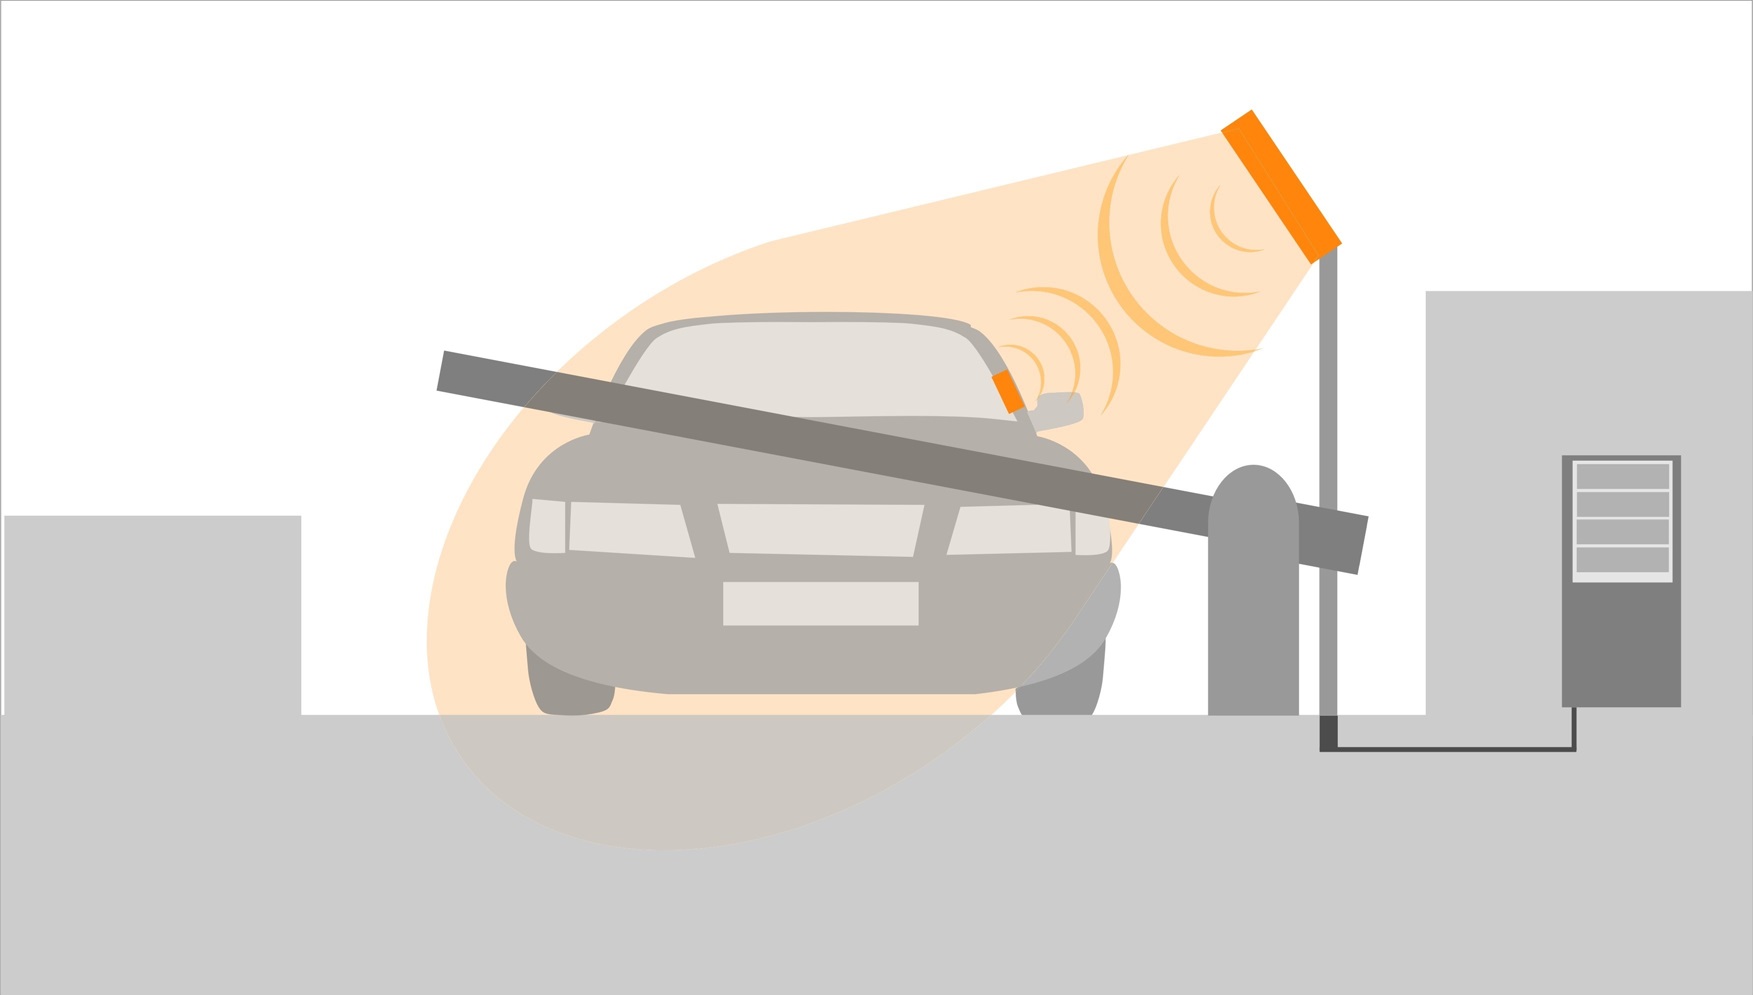 Иллюстрация применения RFID для идентификации автомобильного транспорта